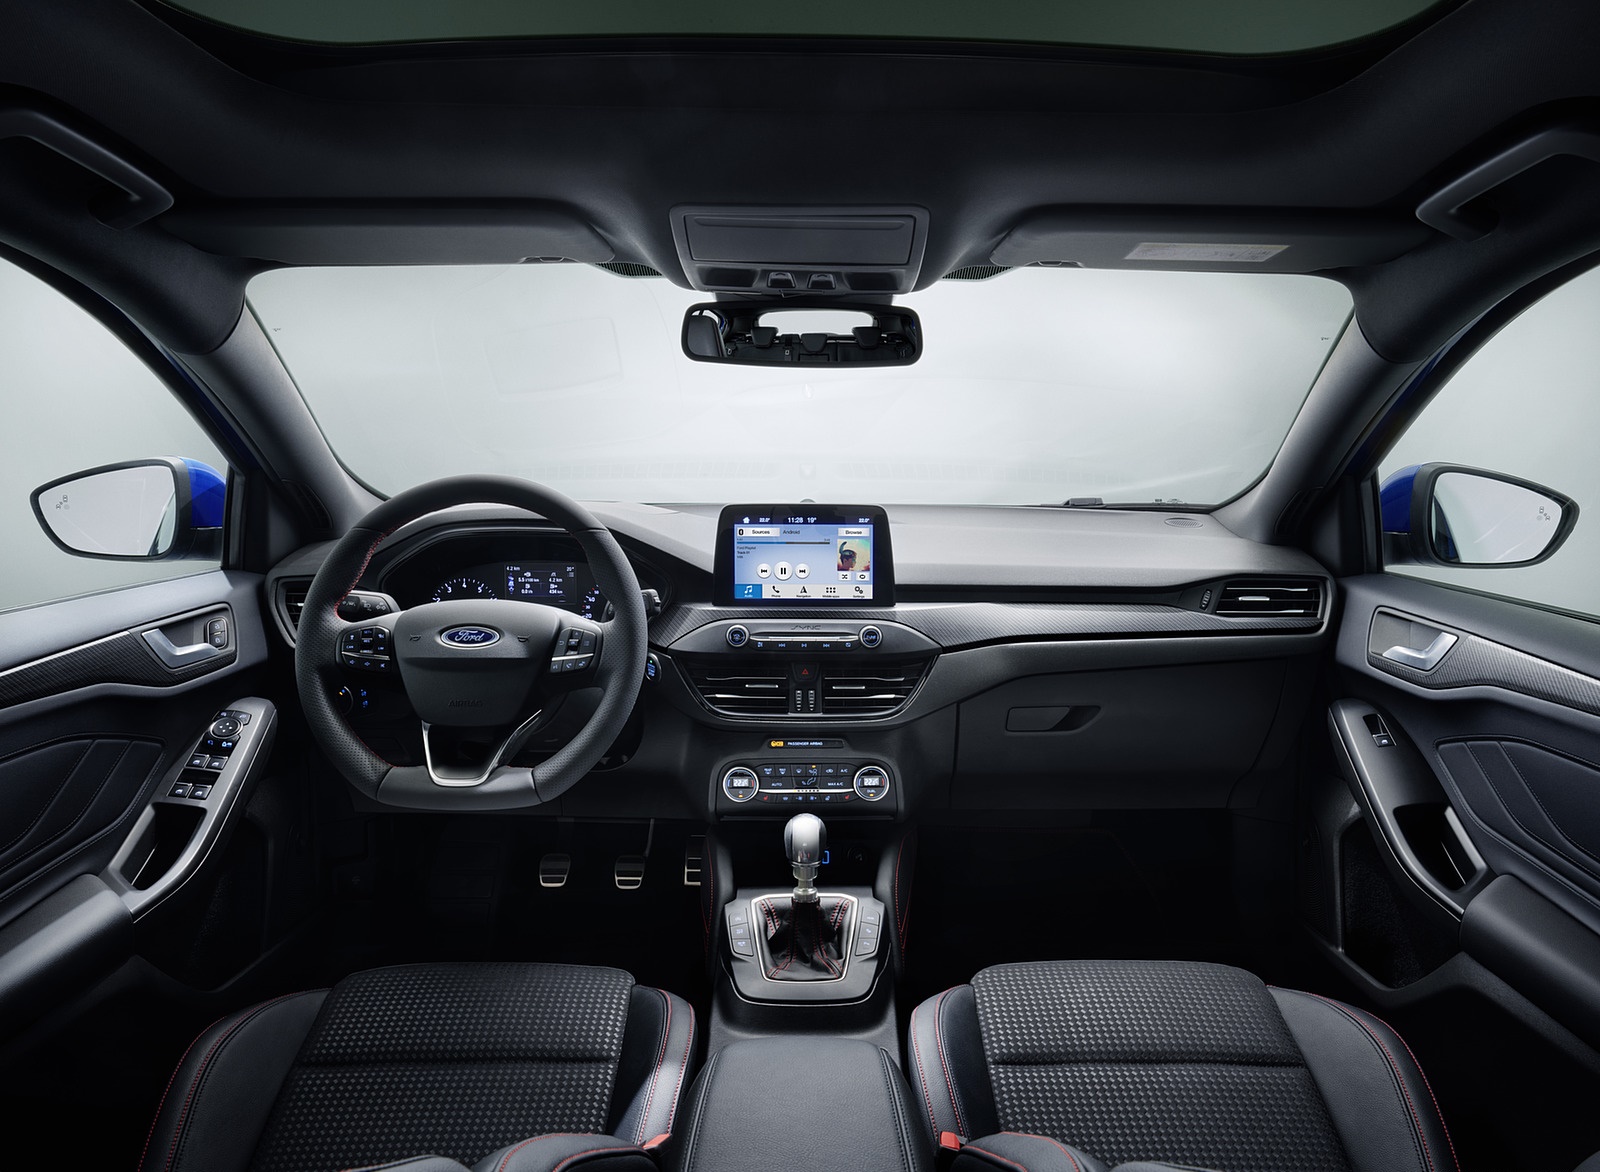 2019 Ford Focus Hatchback ST-Line Interior Cockpit Wallpapers #30 of 90